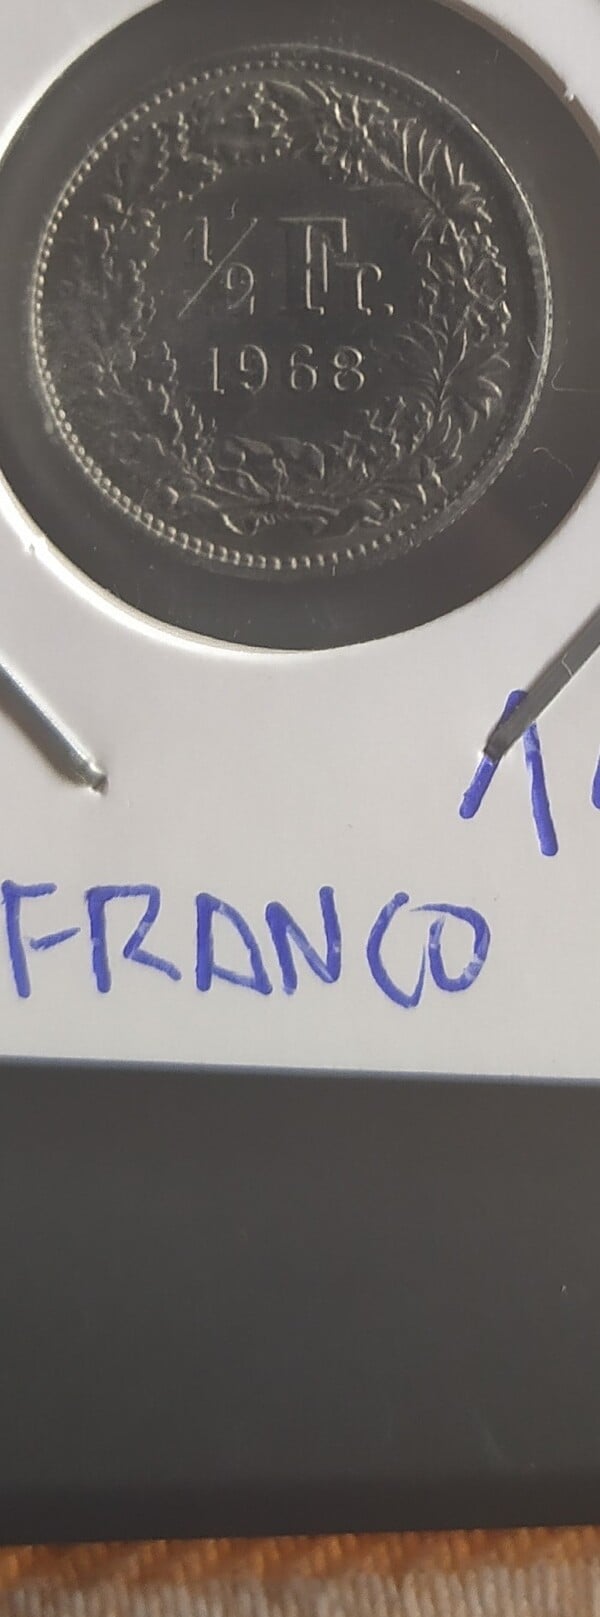 moneda FRANCIA 1/2 FRANCO 1968